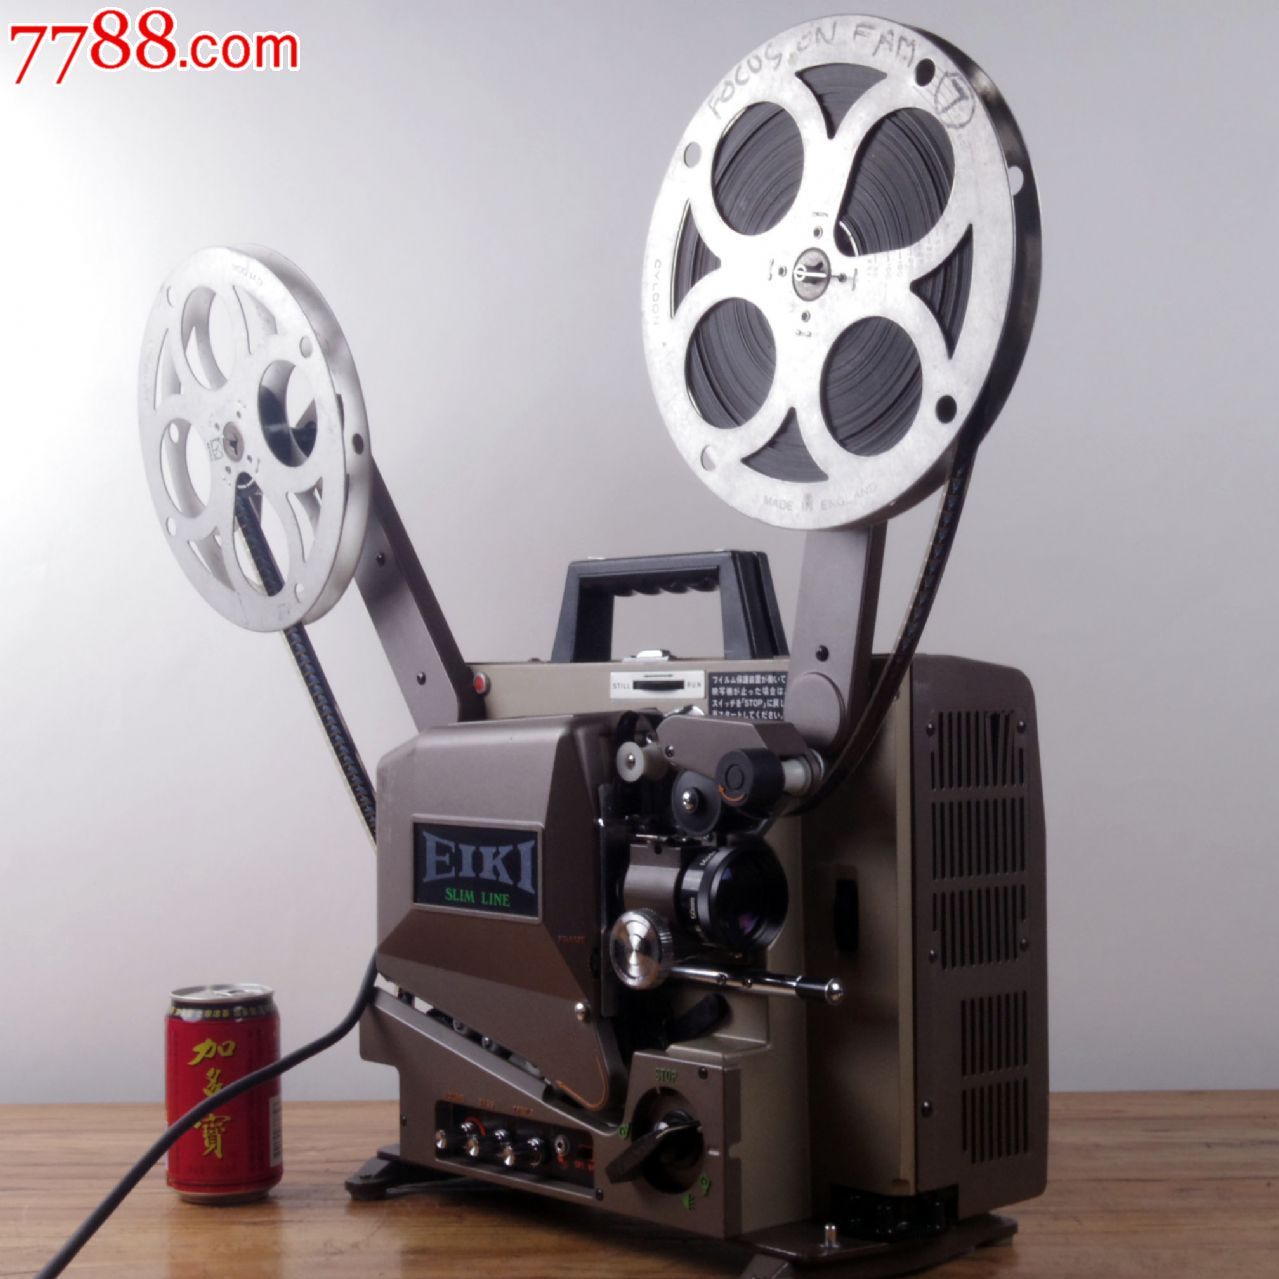 16毫米老长江牌电影放映机一套。正常放映，声音响亮，图像清晰，品相如图。-价格:3680元-se78672644-电影机/放映机-零售 ...